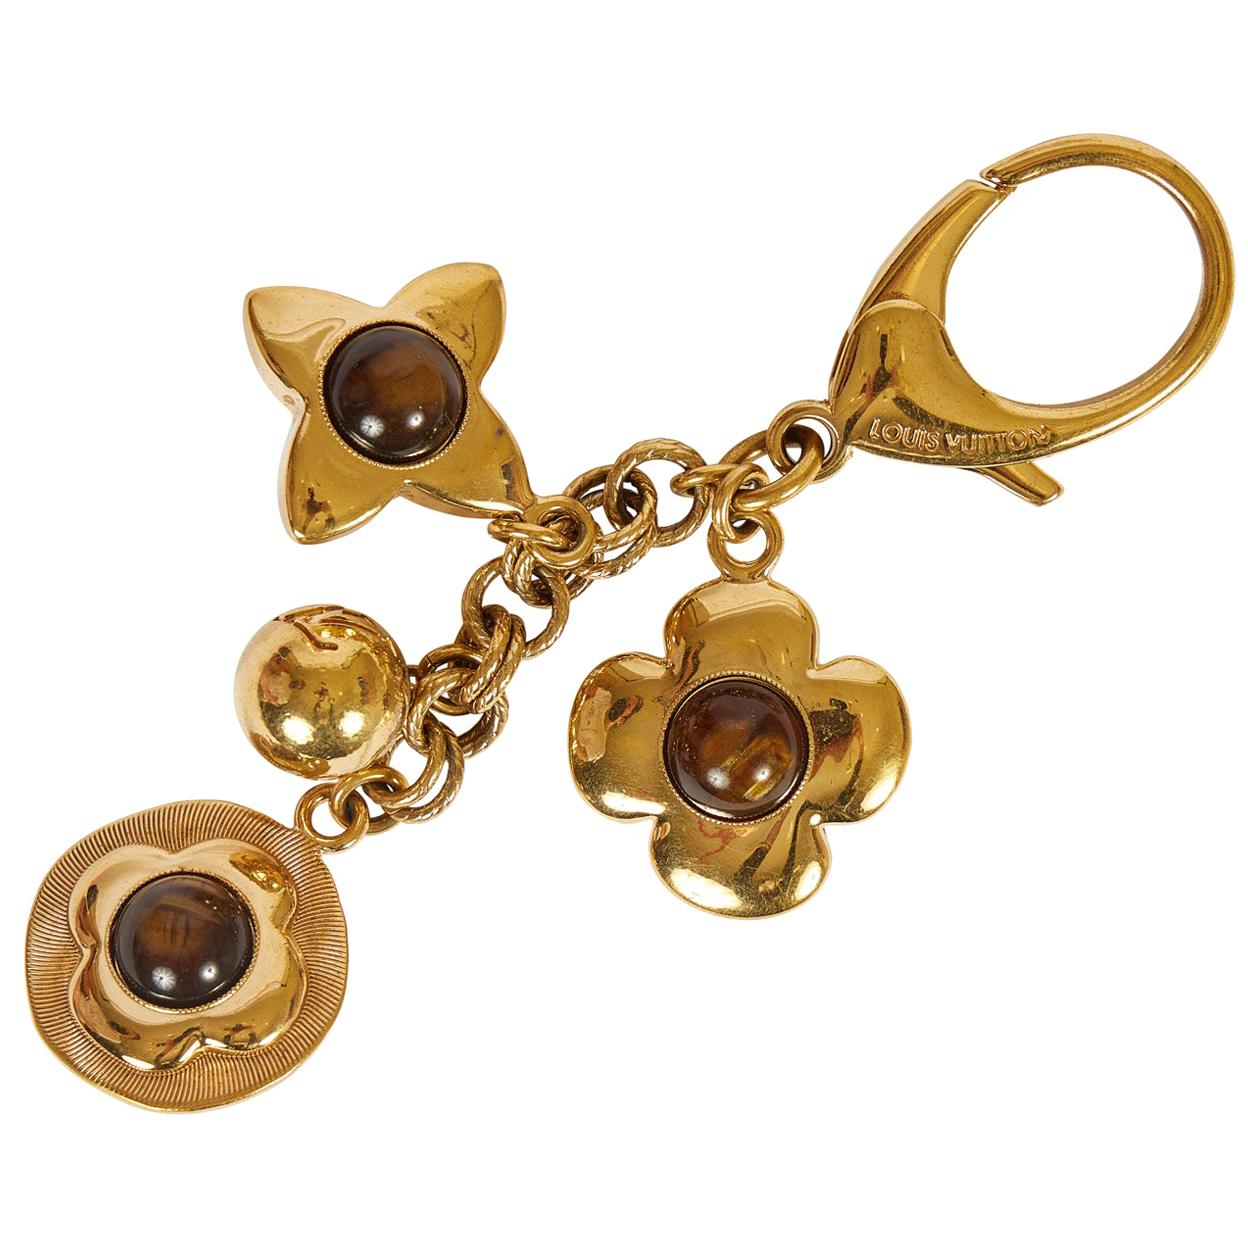 Louis Vuitton Bag Charm Keychain Gold Brown